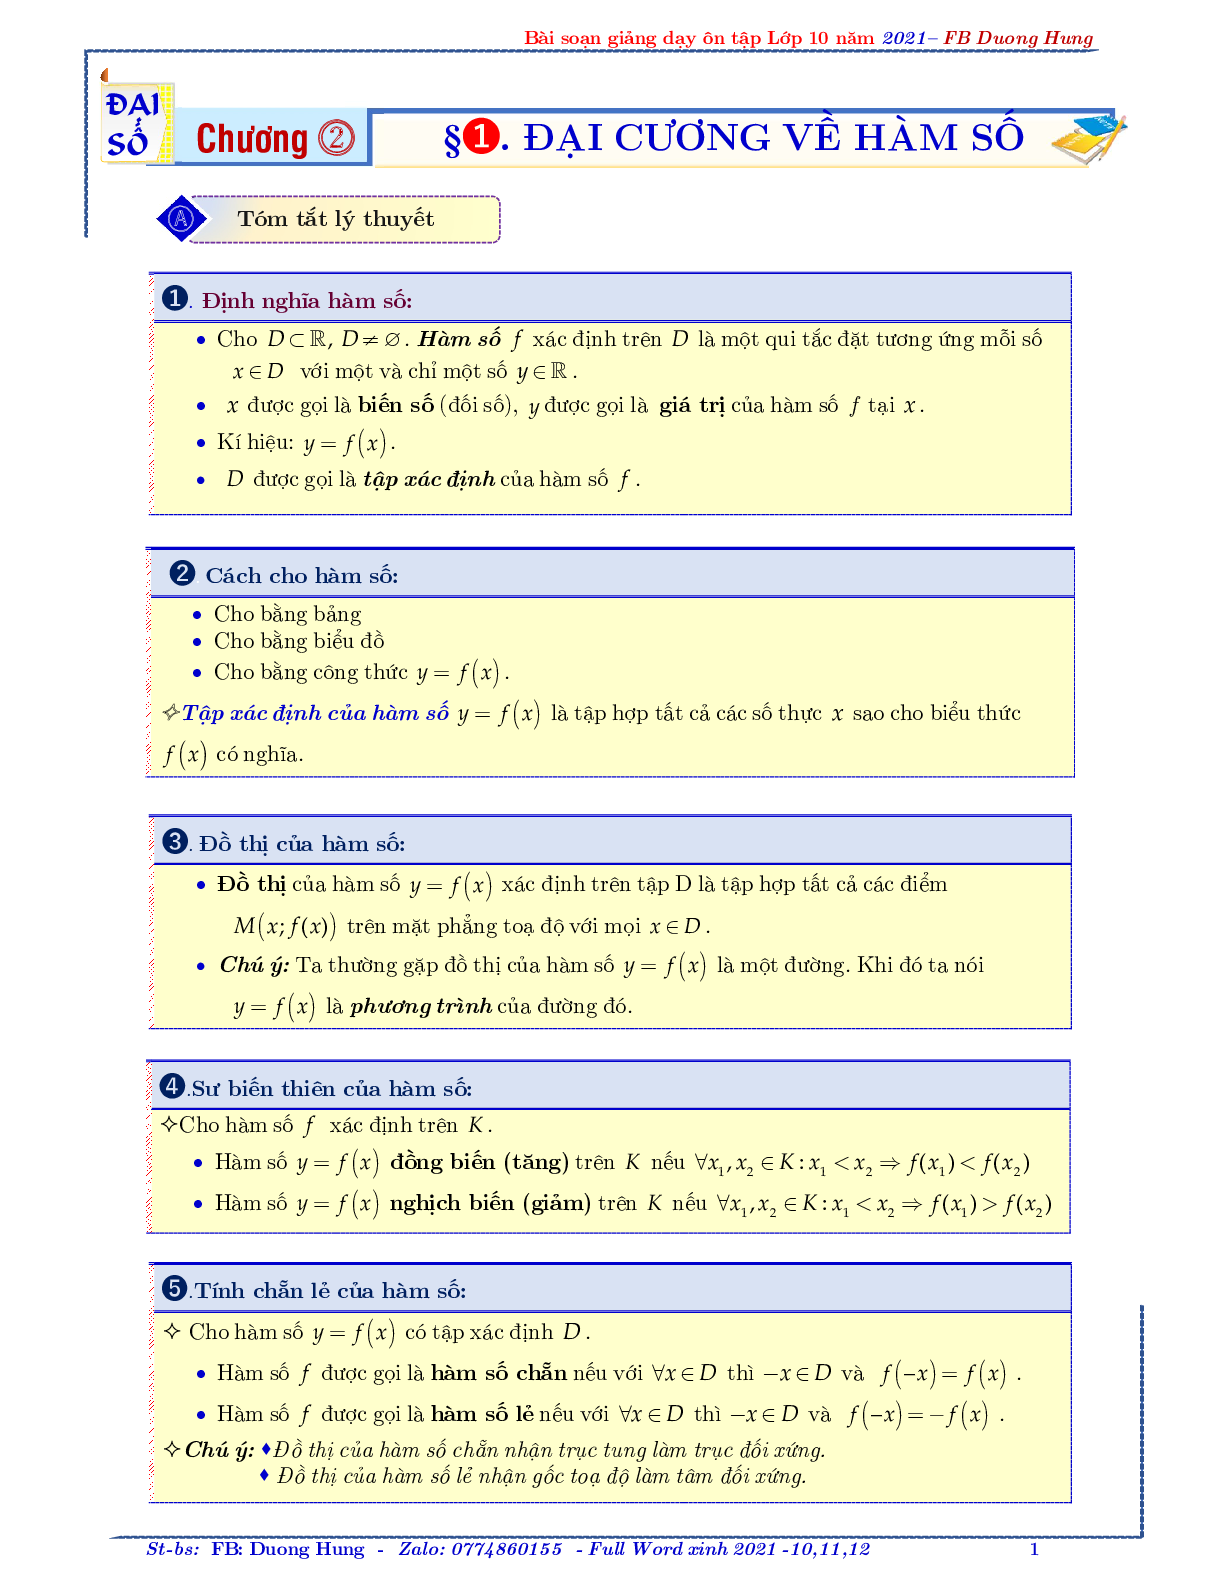 Chuyên đề về hàm số bậc nhất và bậc hai - bản 1 (trang 1)